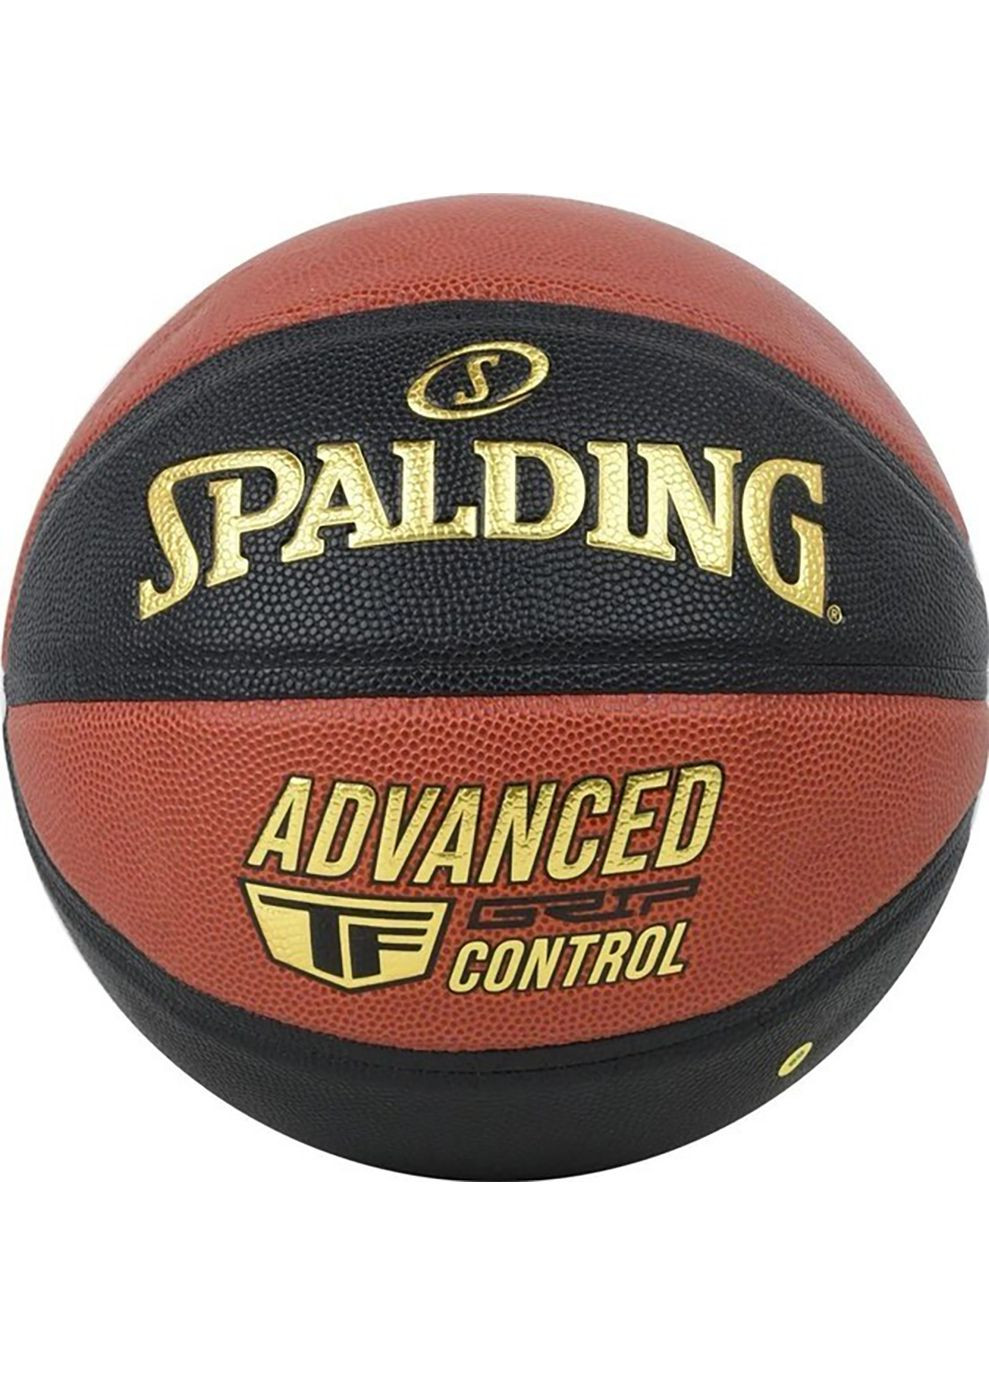 М'яч баскетбольний Advanced Grip Control чорний, помаранчевий Уні 7 Spalding (268747369)